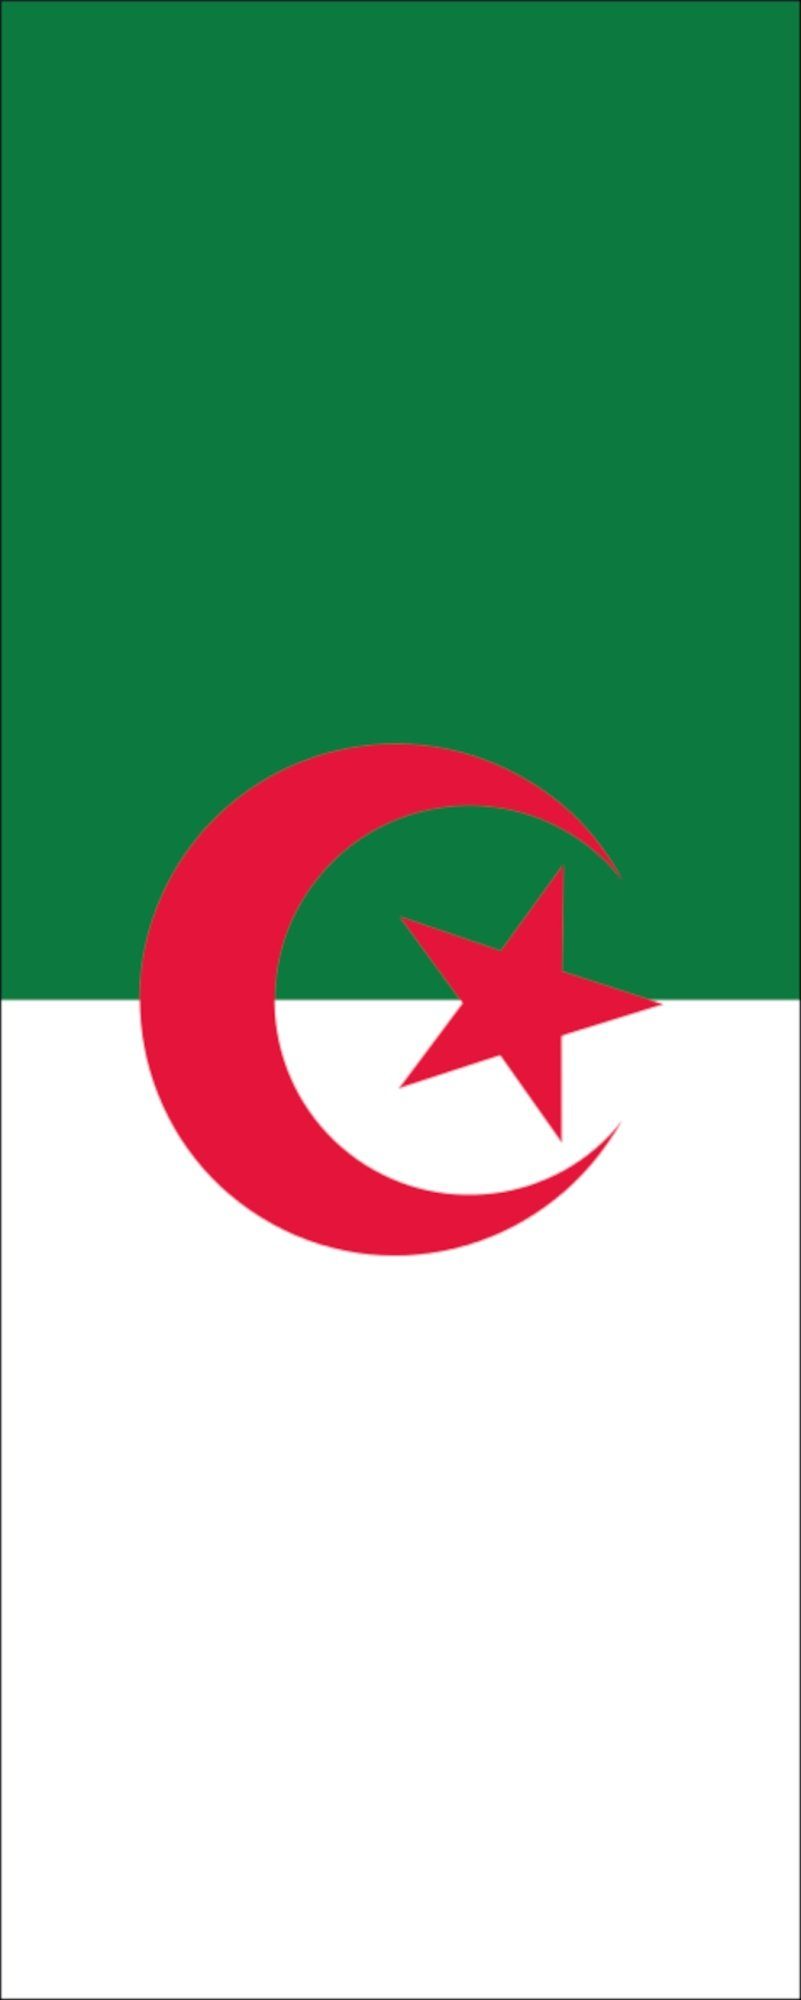 Algerien Flagge 110 Hochformat Flagge flaggenmeer g/m²